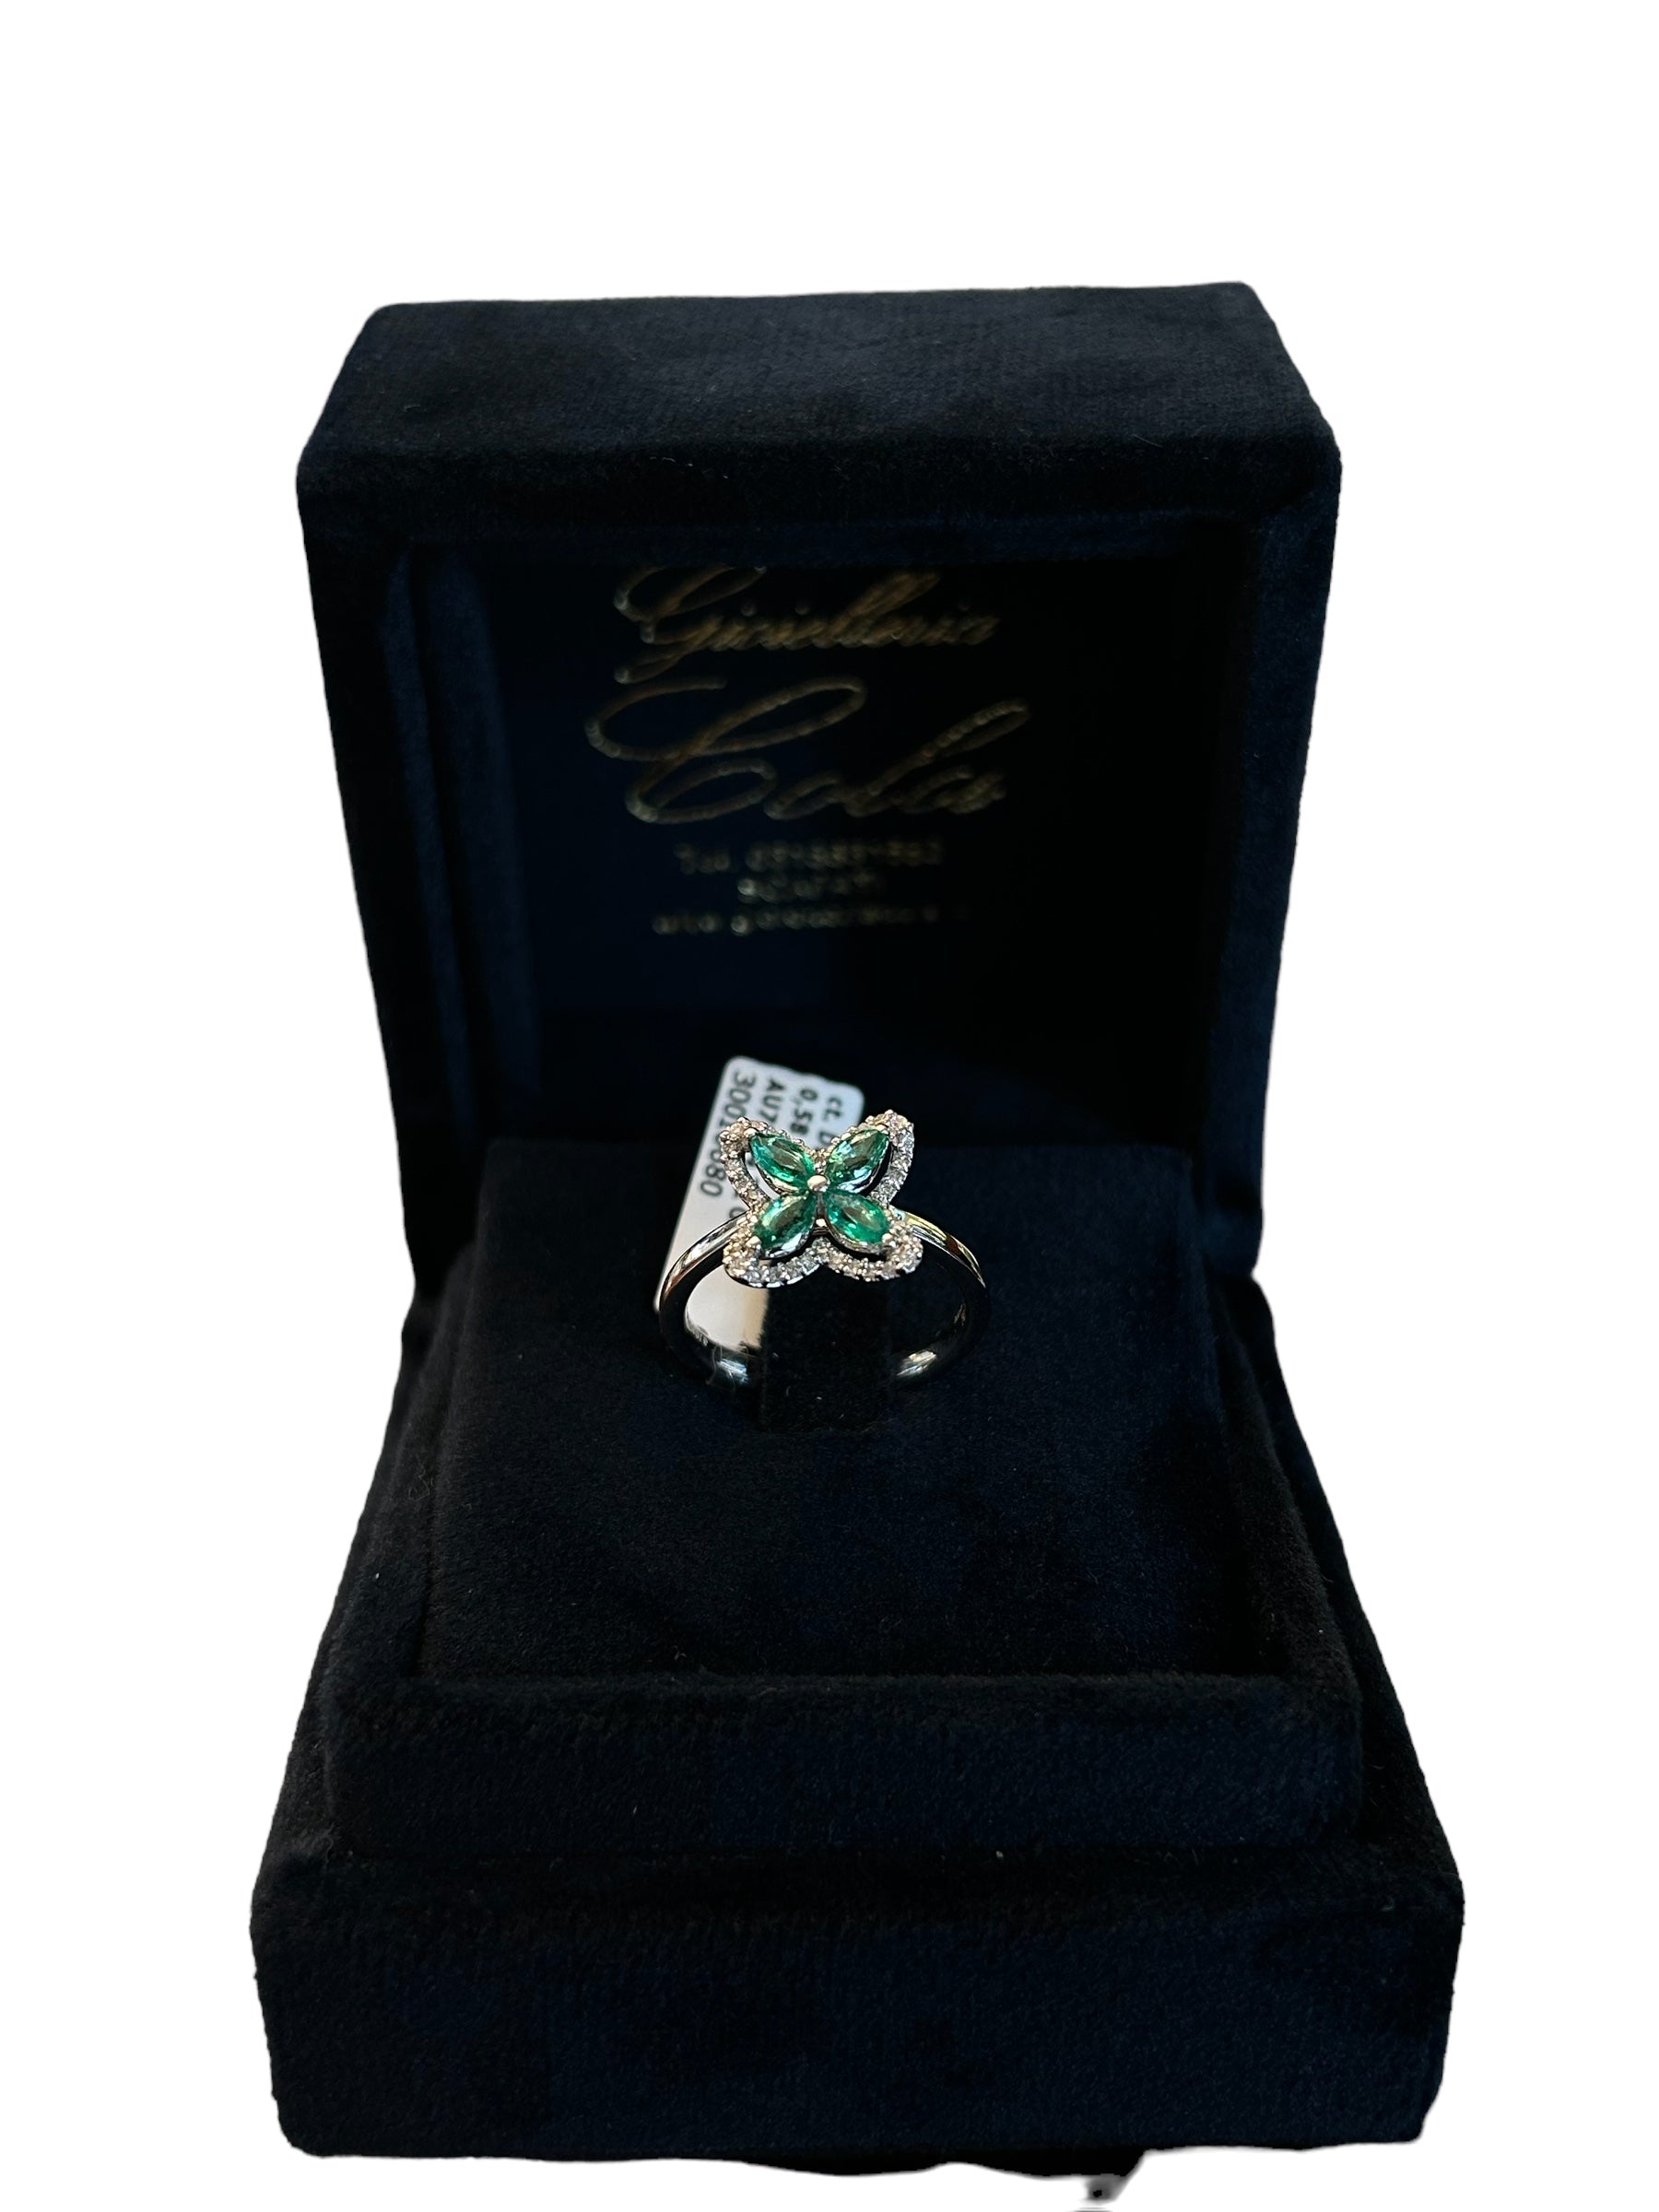 Anello FIORE oro bianco e giro di diamanti con smeraldo, 0.58 carati di smeraldi - 1395A03MW